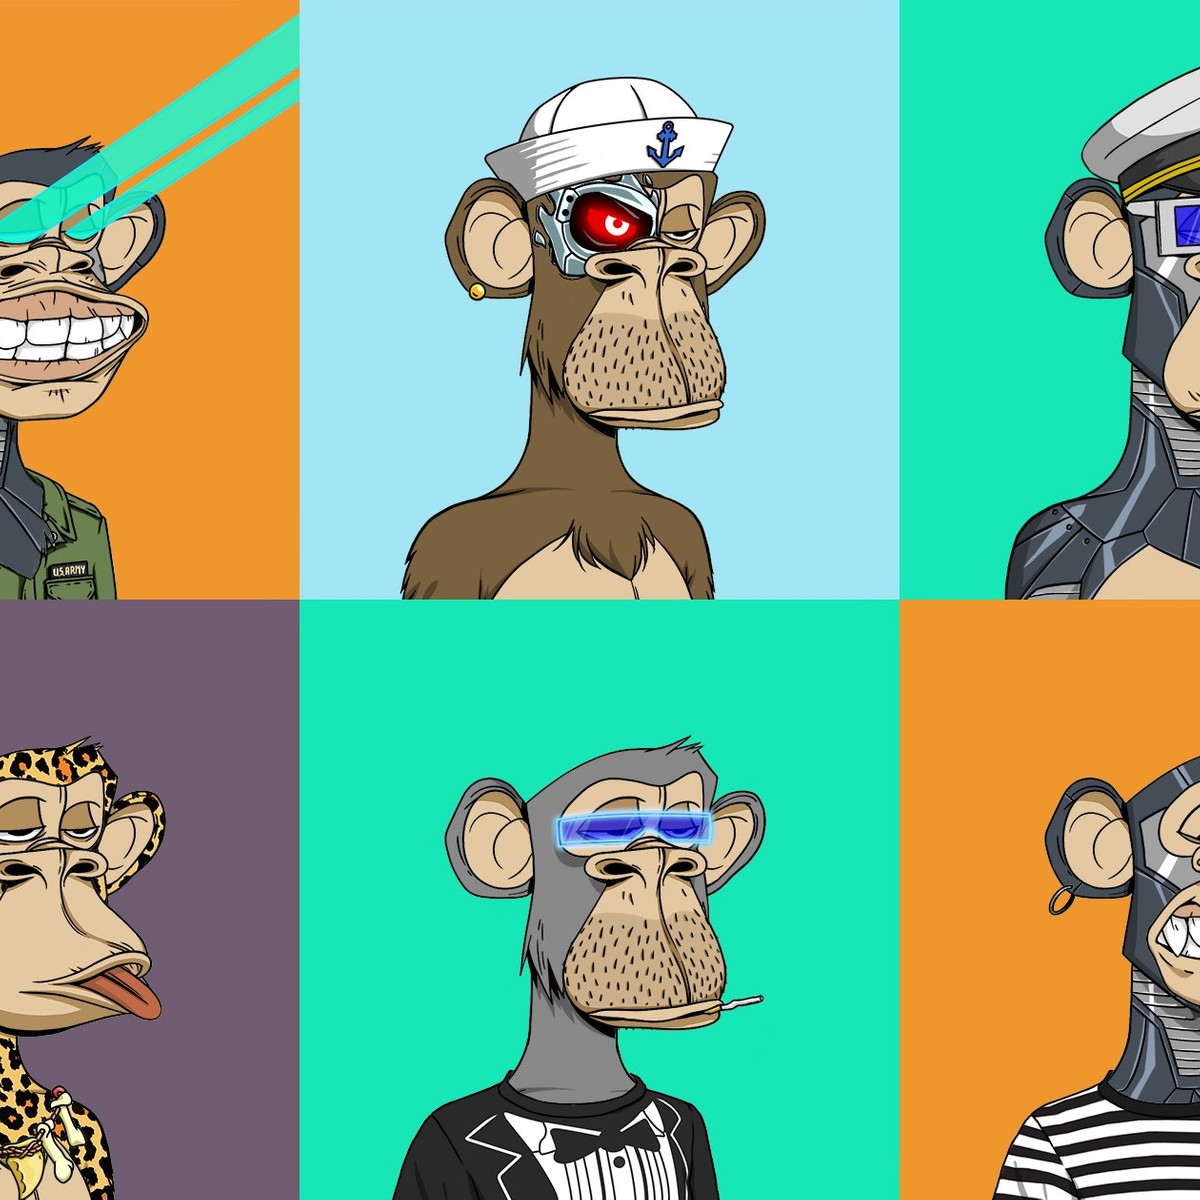 Macacos engraçados · Creative Fabrica